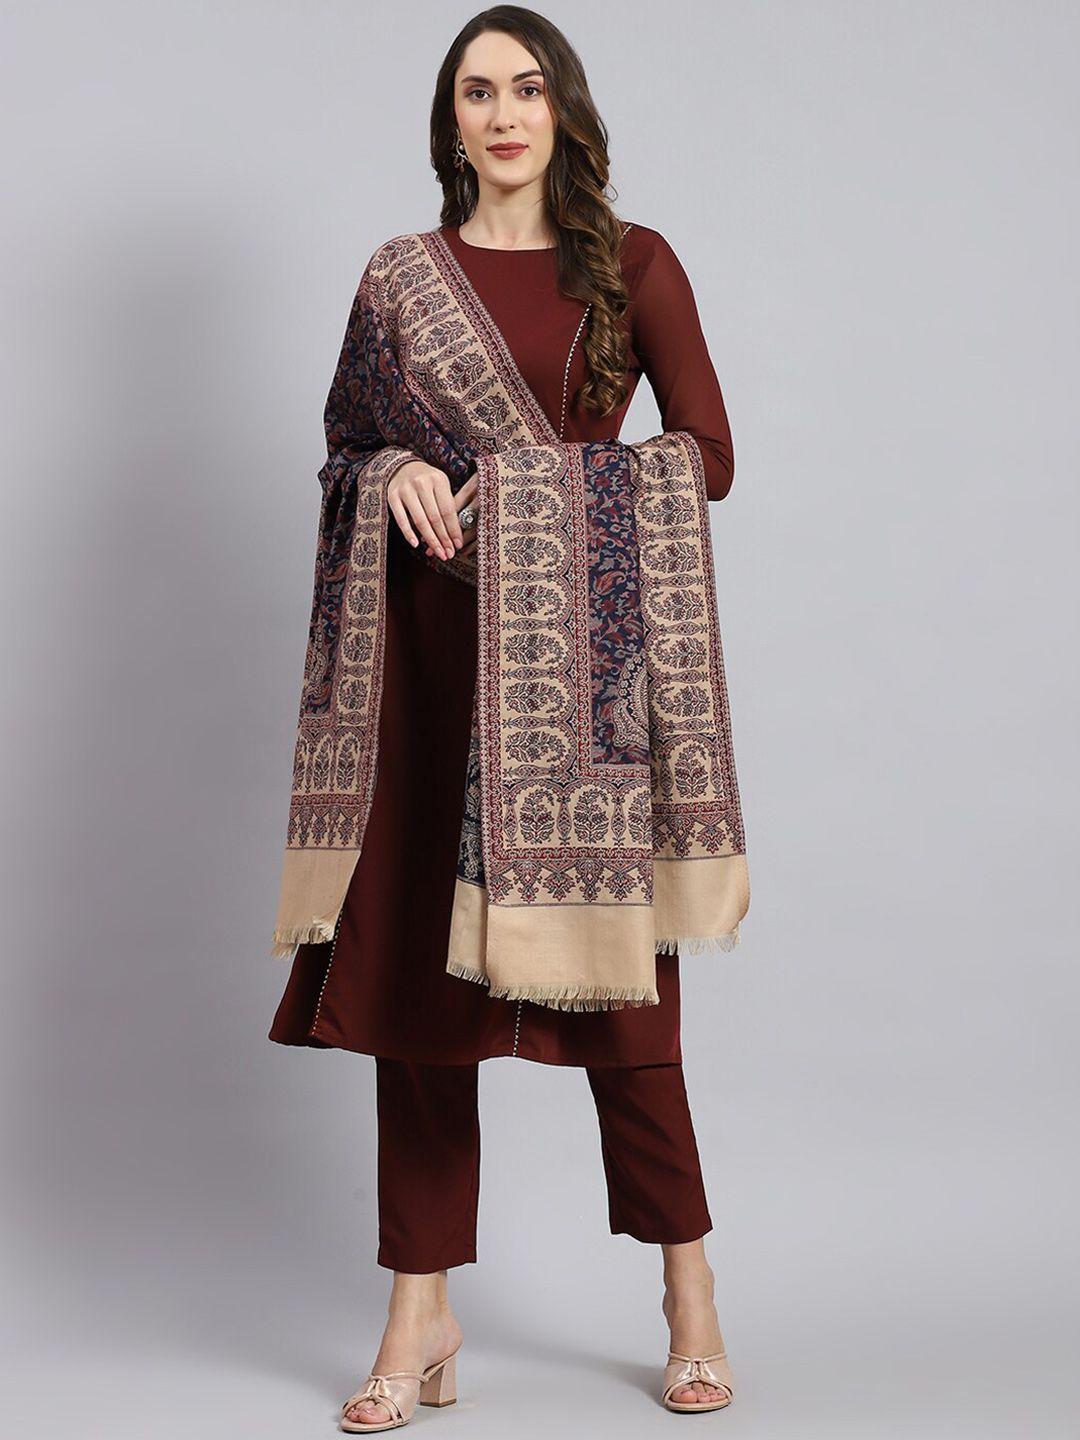 monte carlo ethnic motif woven-design shawl